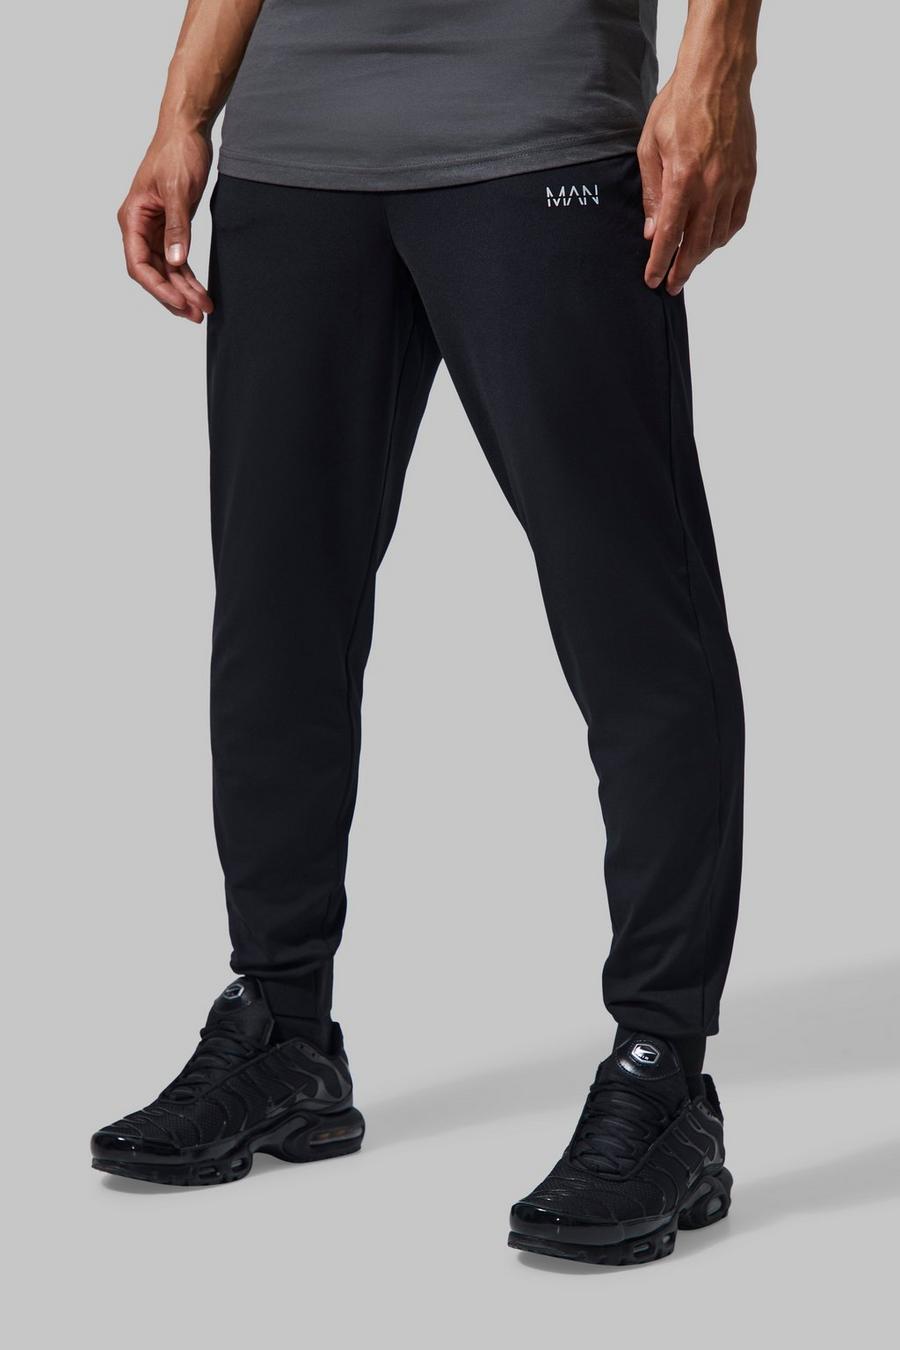 Pantalón deportivo MAN Active para el gimnasio con cintura fija, Black image number 1